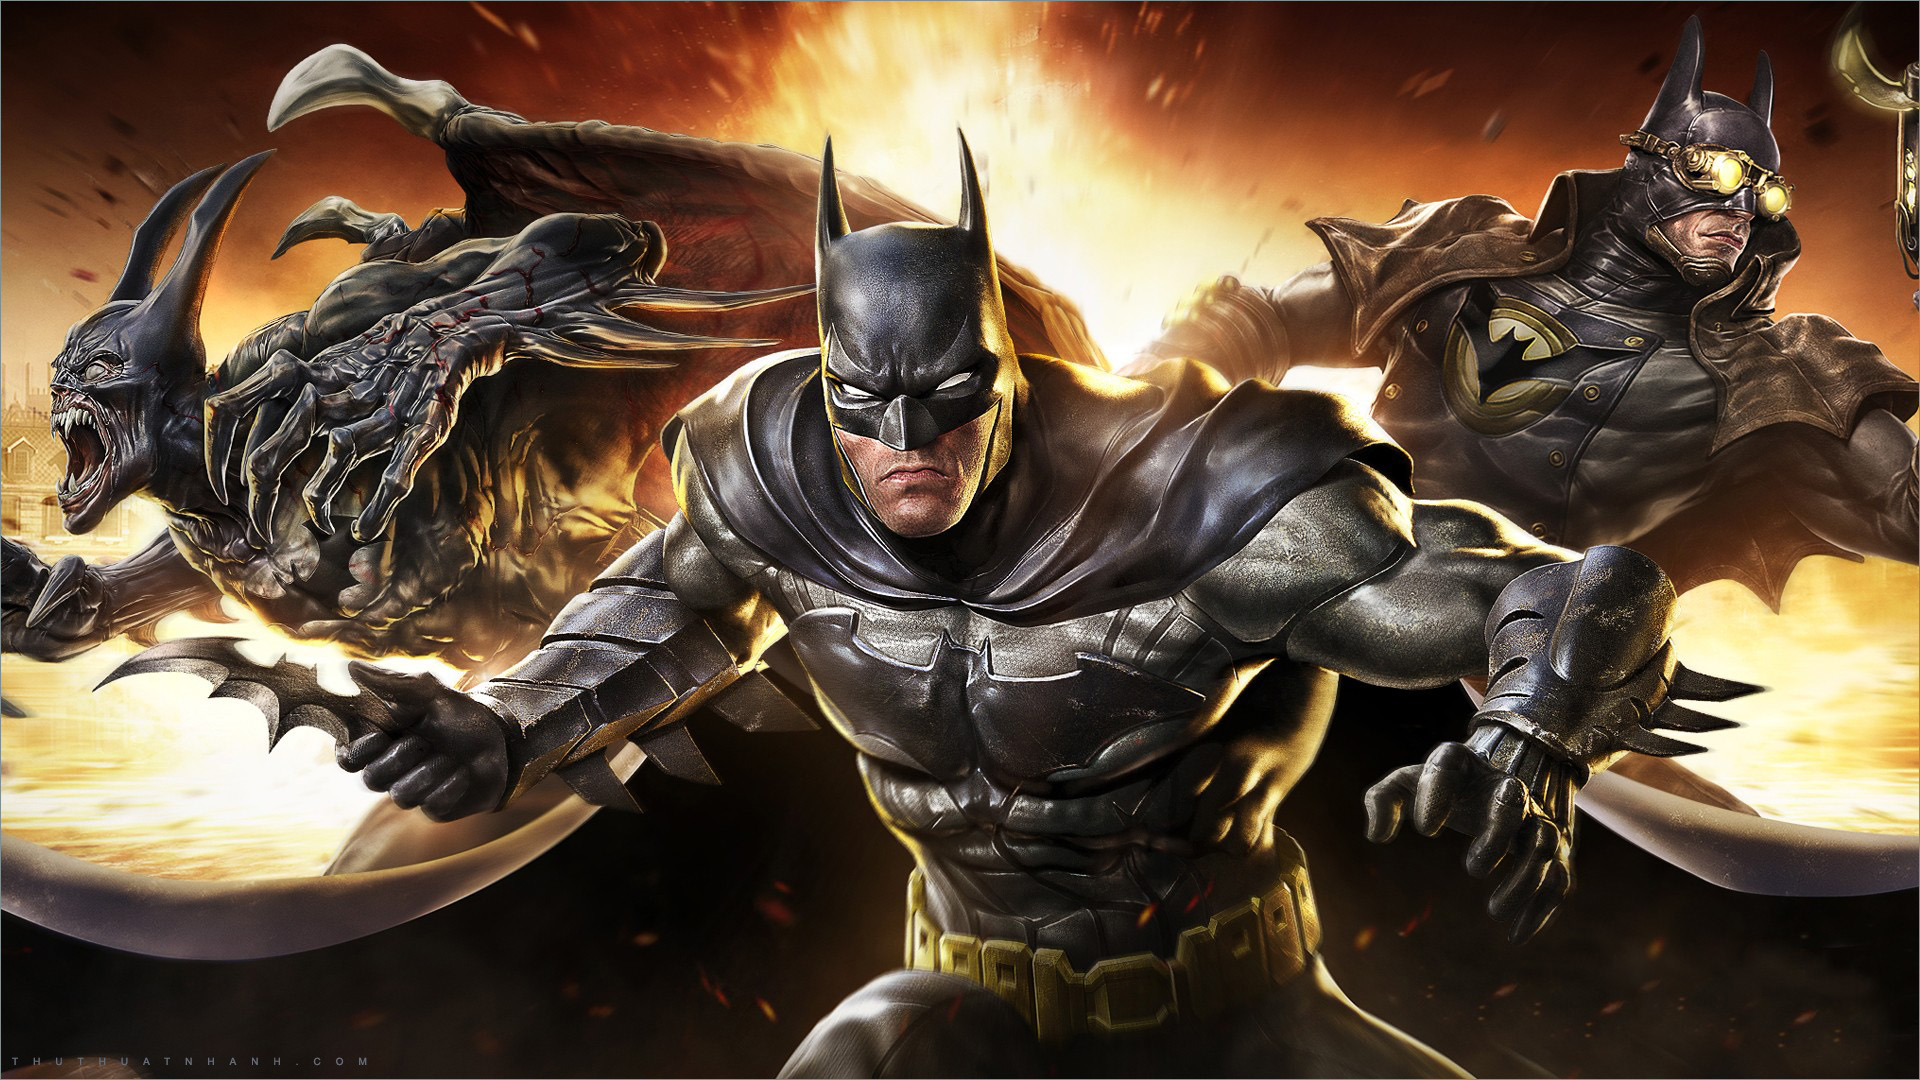 Tạo hình khiến Batman trên phim mất điểm trước người hâm mộ comic